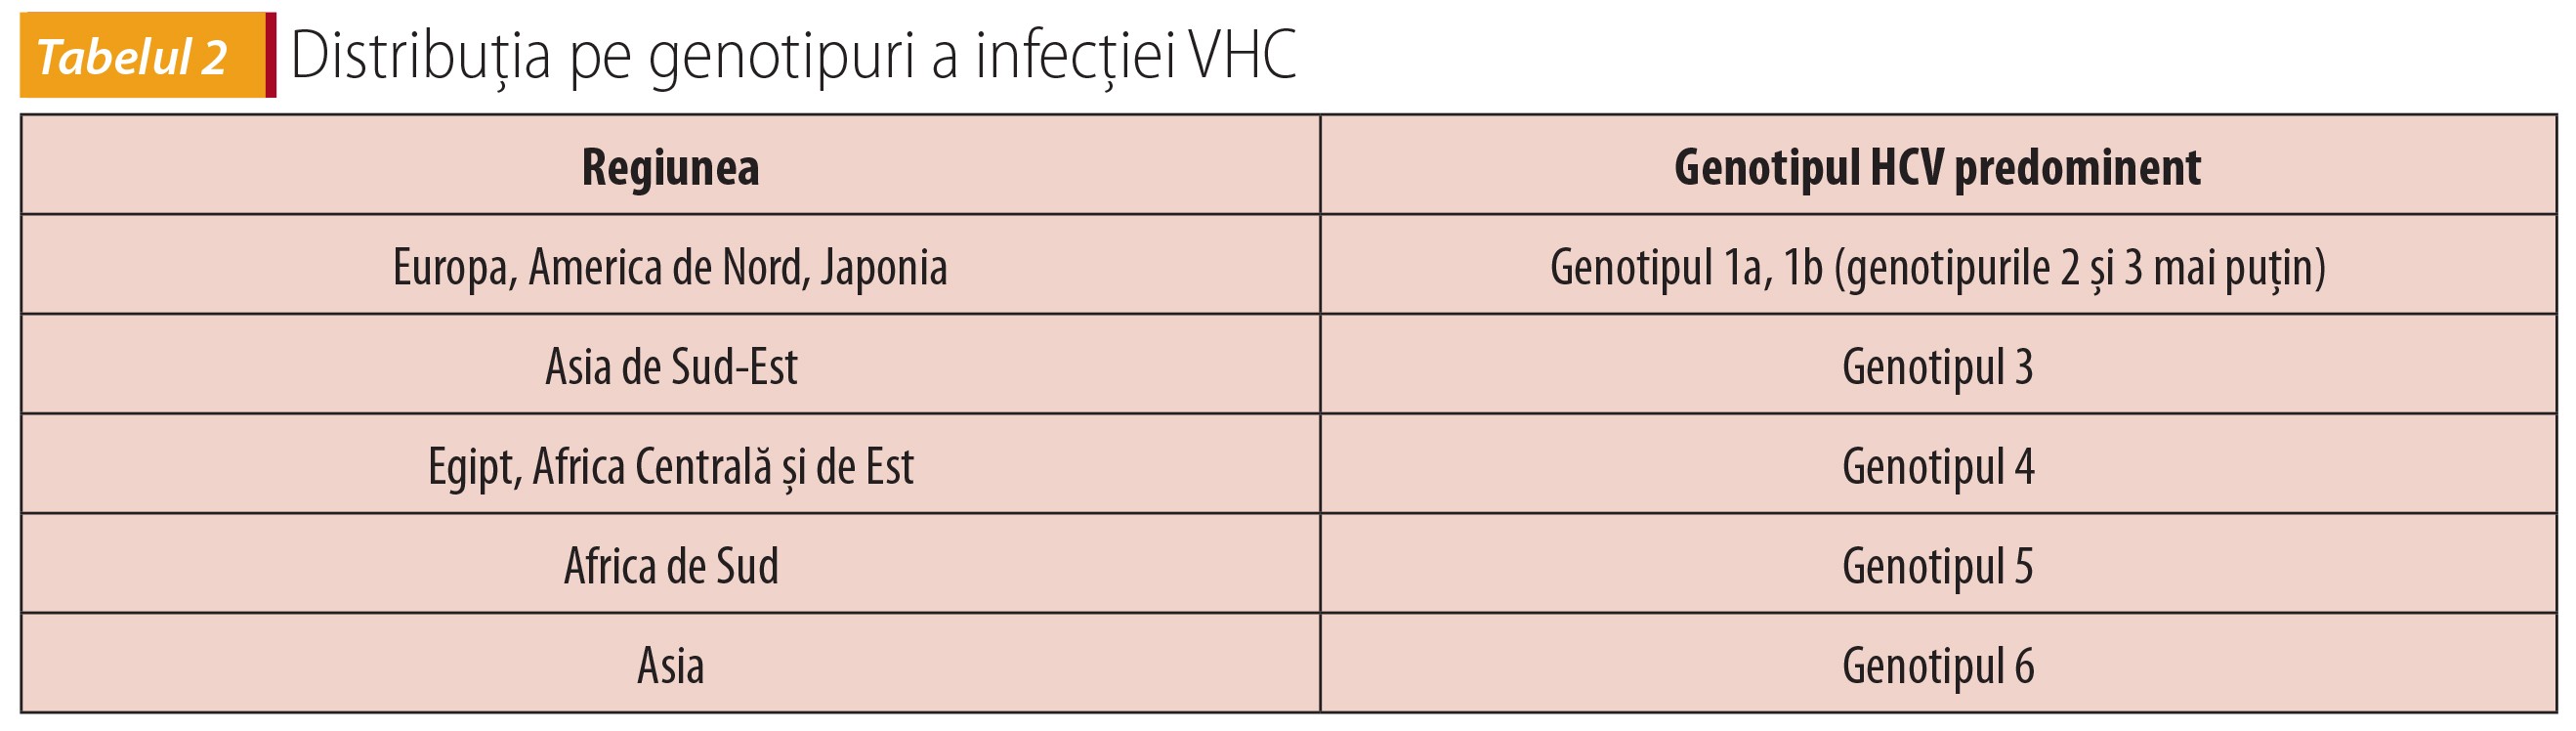 Tabelul 2; Distribuţia pe genotipuri a infecţiei VHC